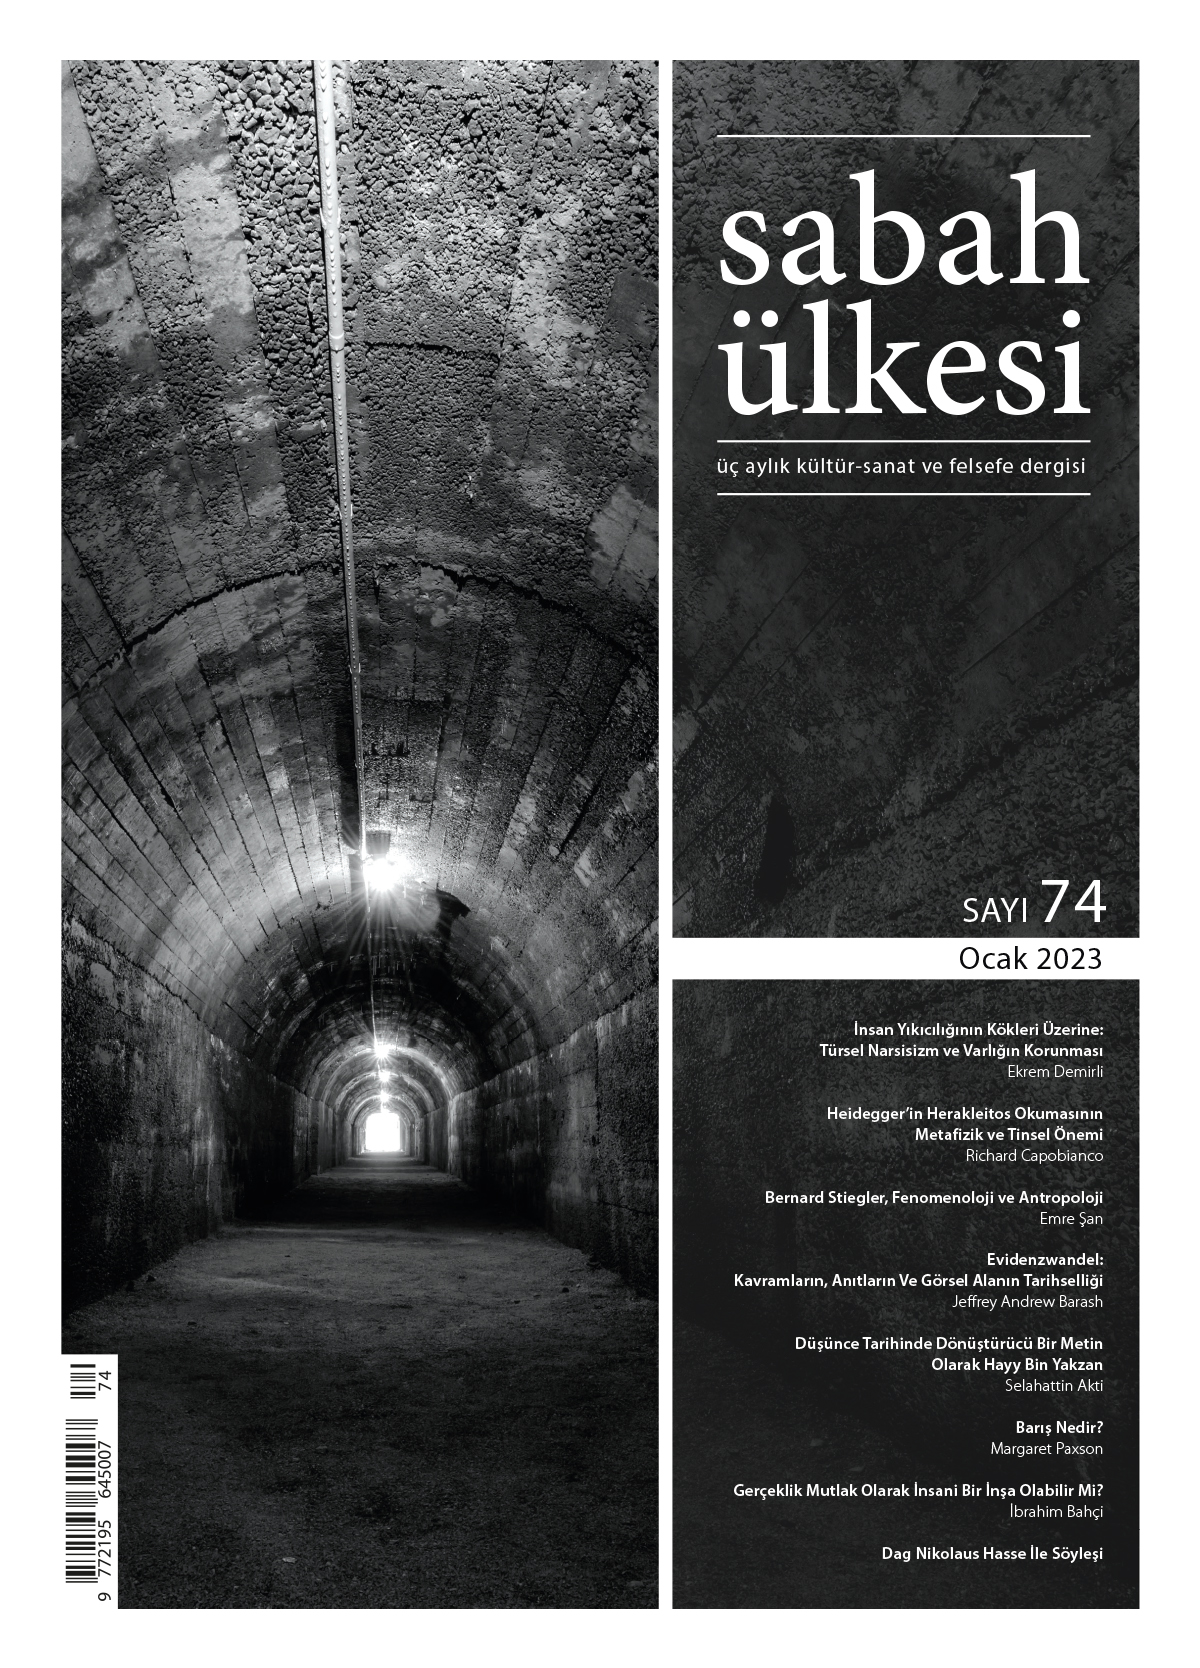 Sabah Ülkesi Archiv Cover